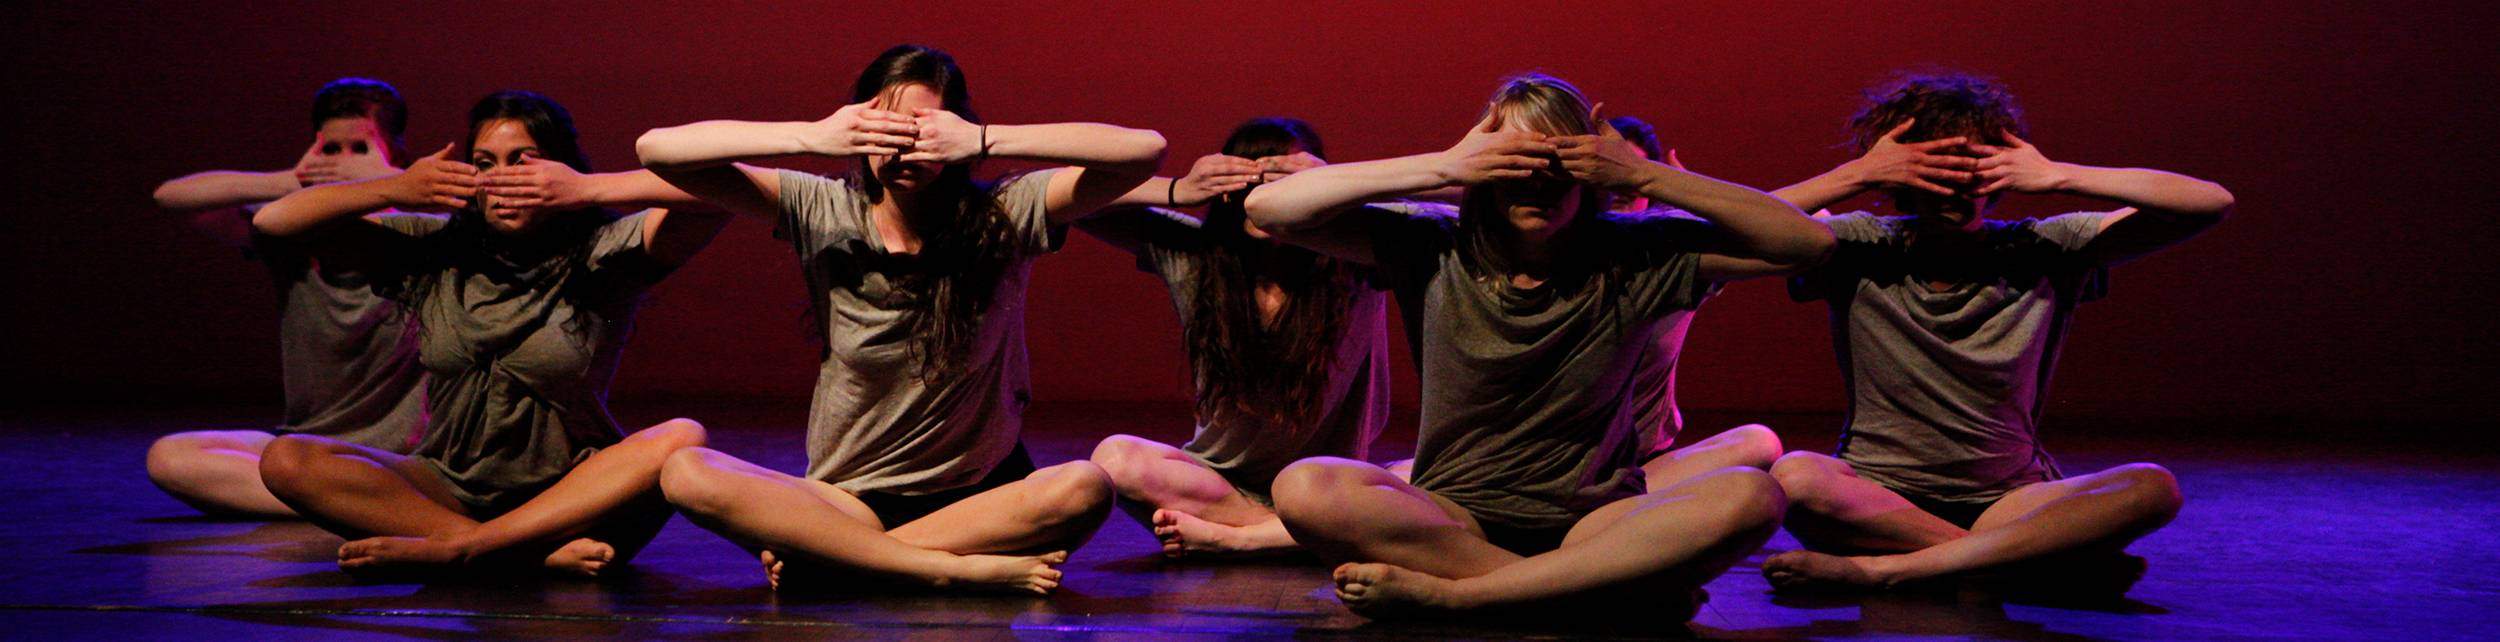 Dance performance critique essay